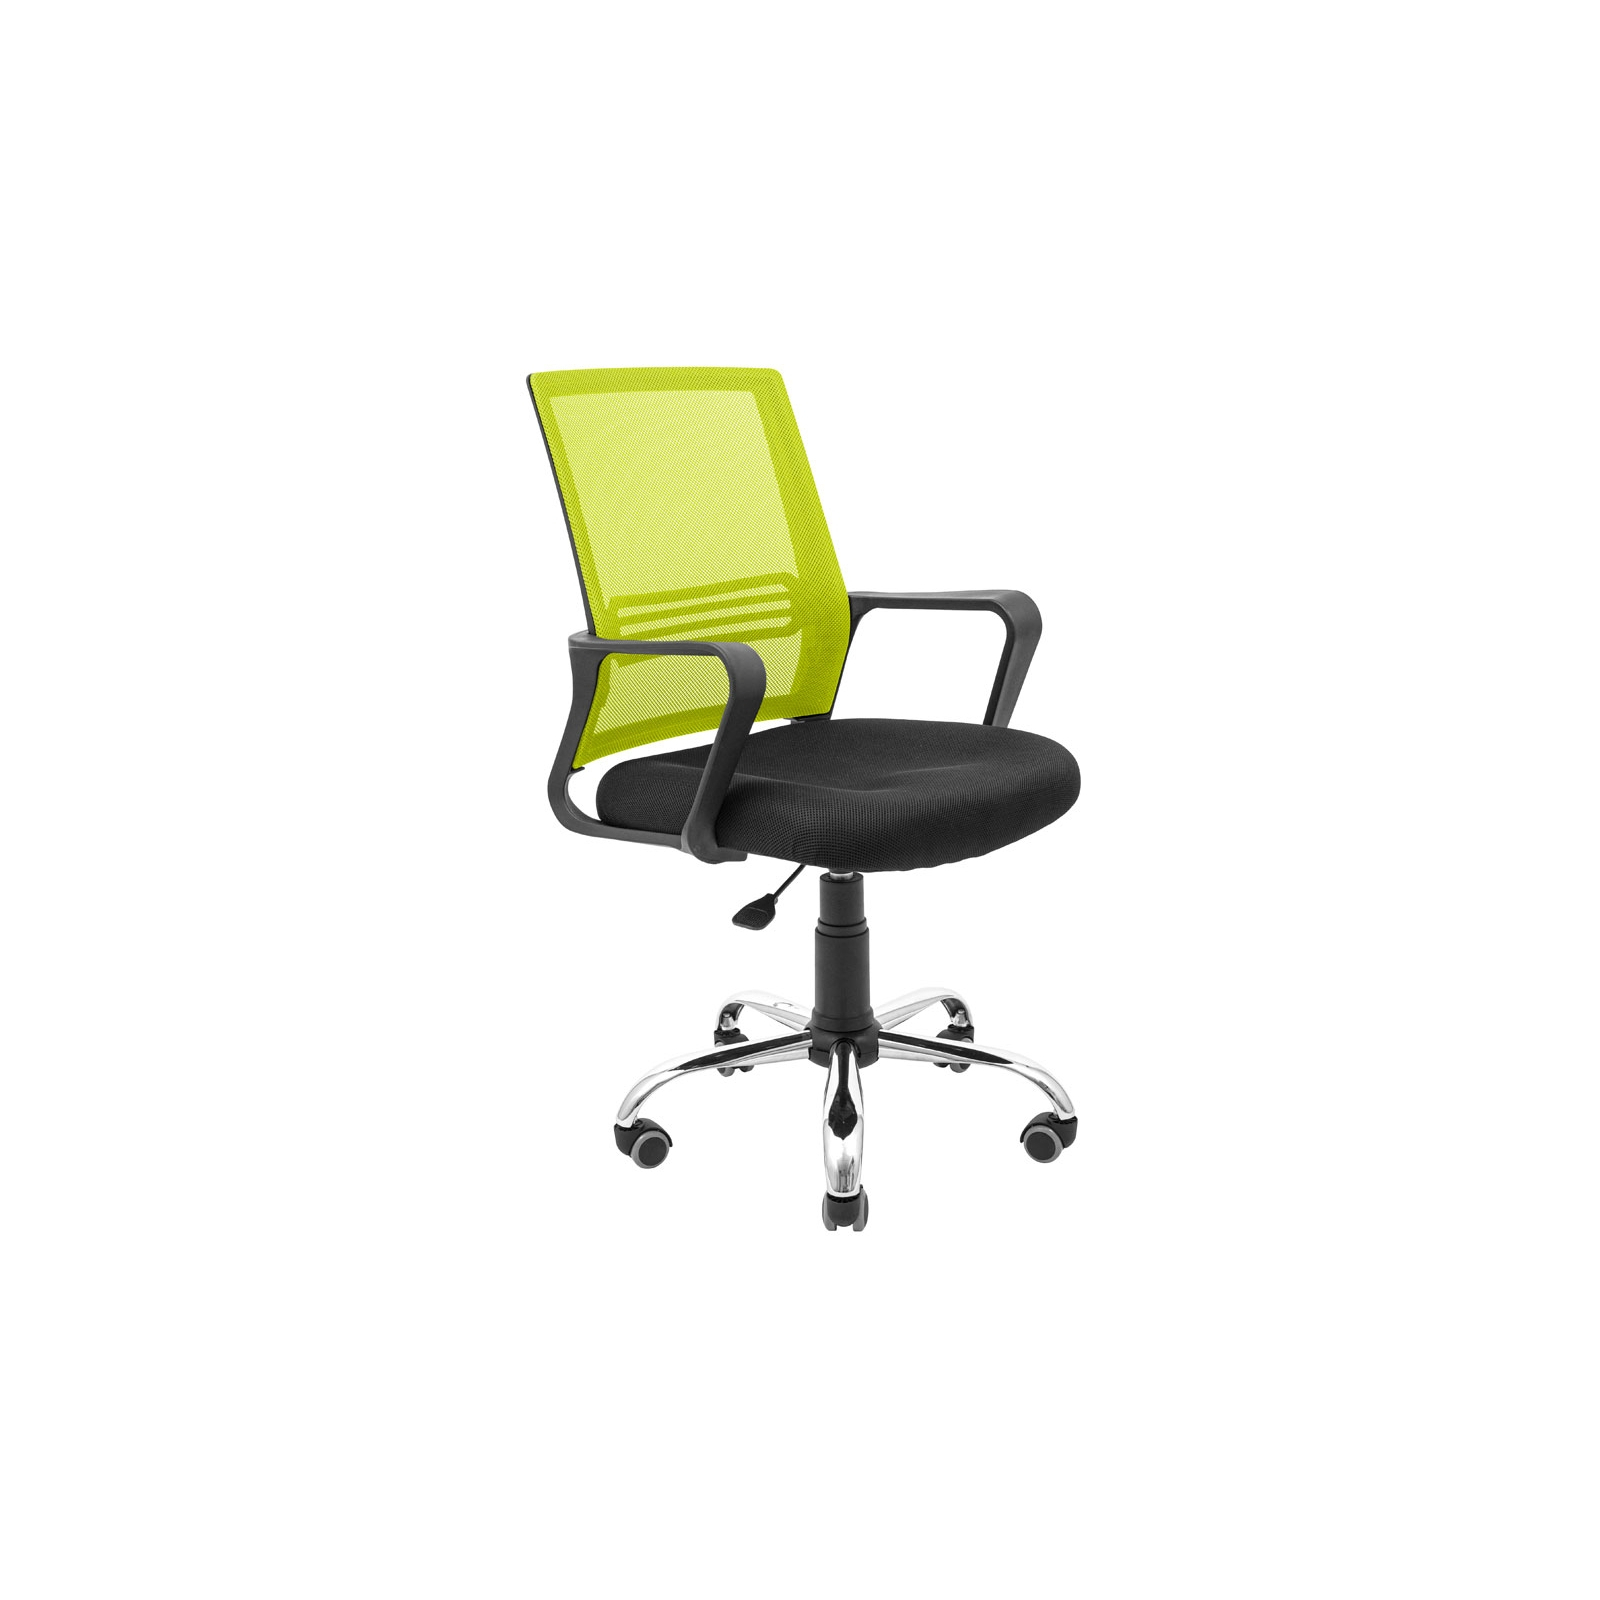 Офисное кресло Richman Джина Хром Пиастра Сетка черная+зеленая (ADD0003093)